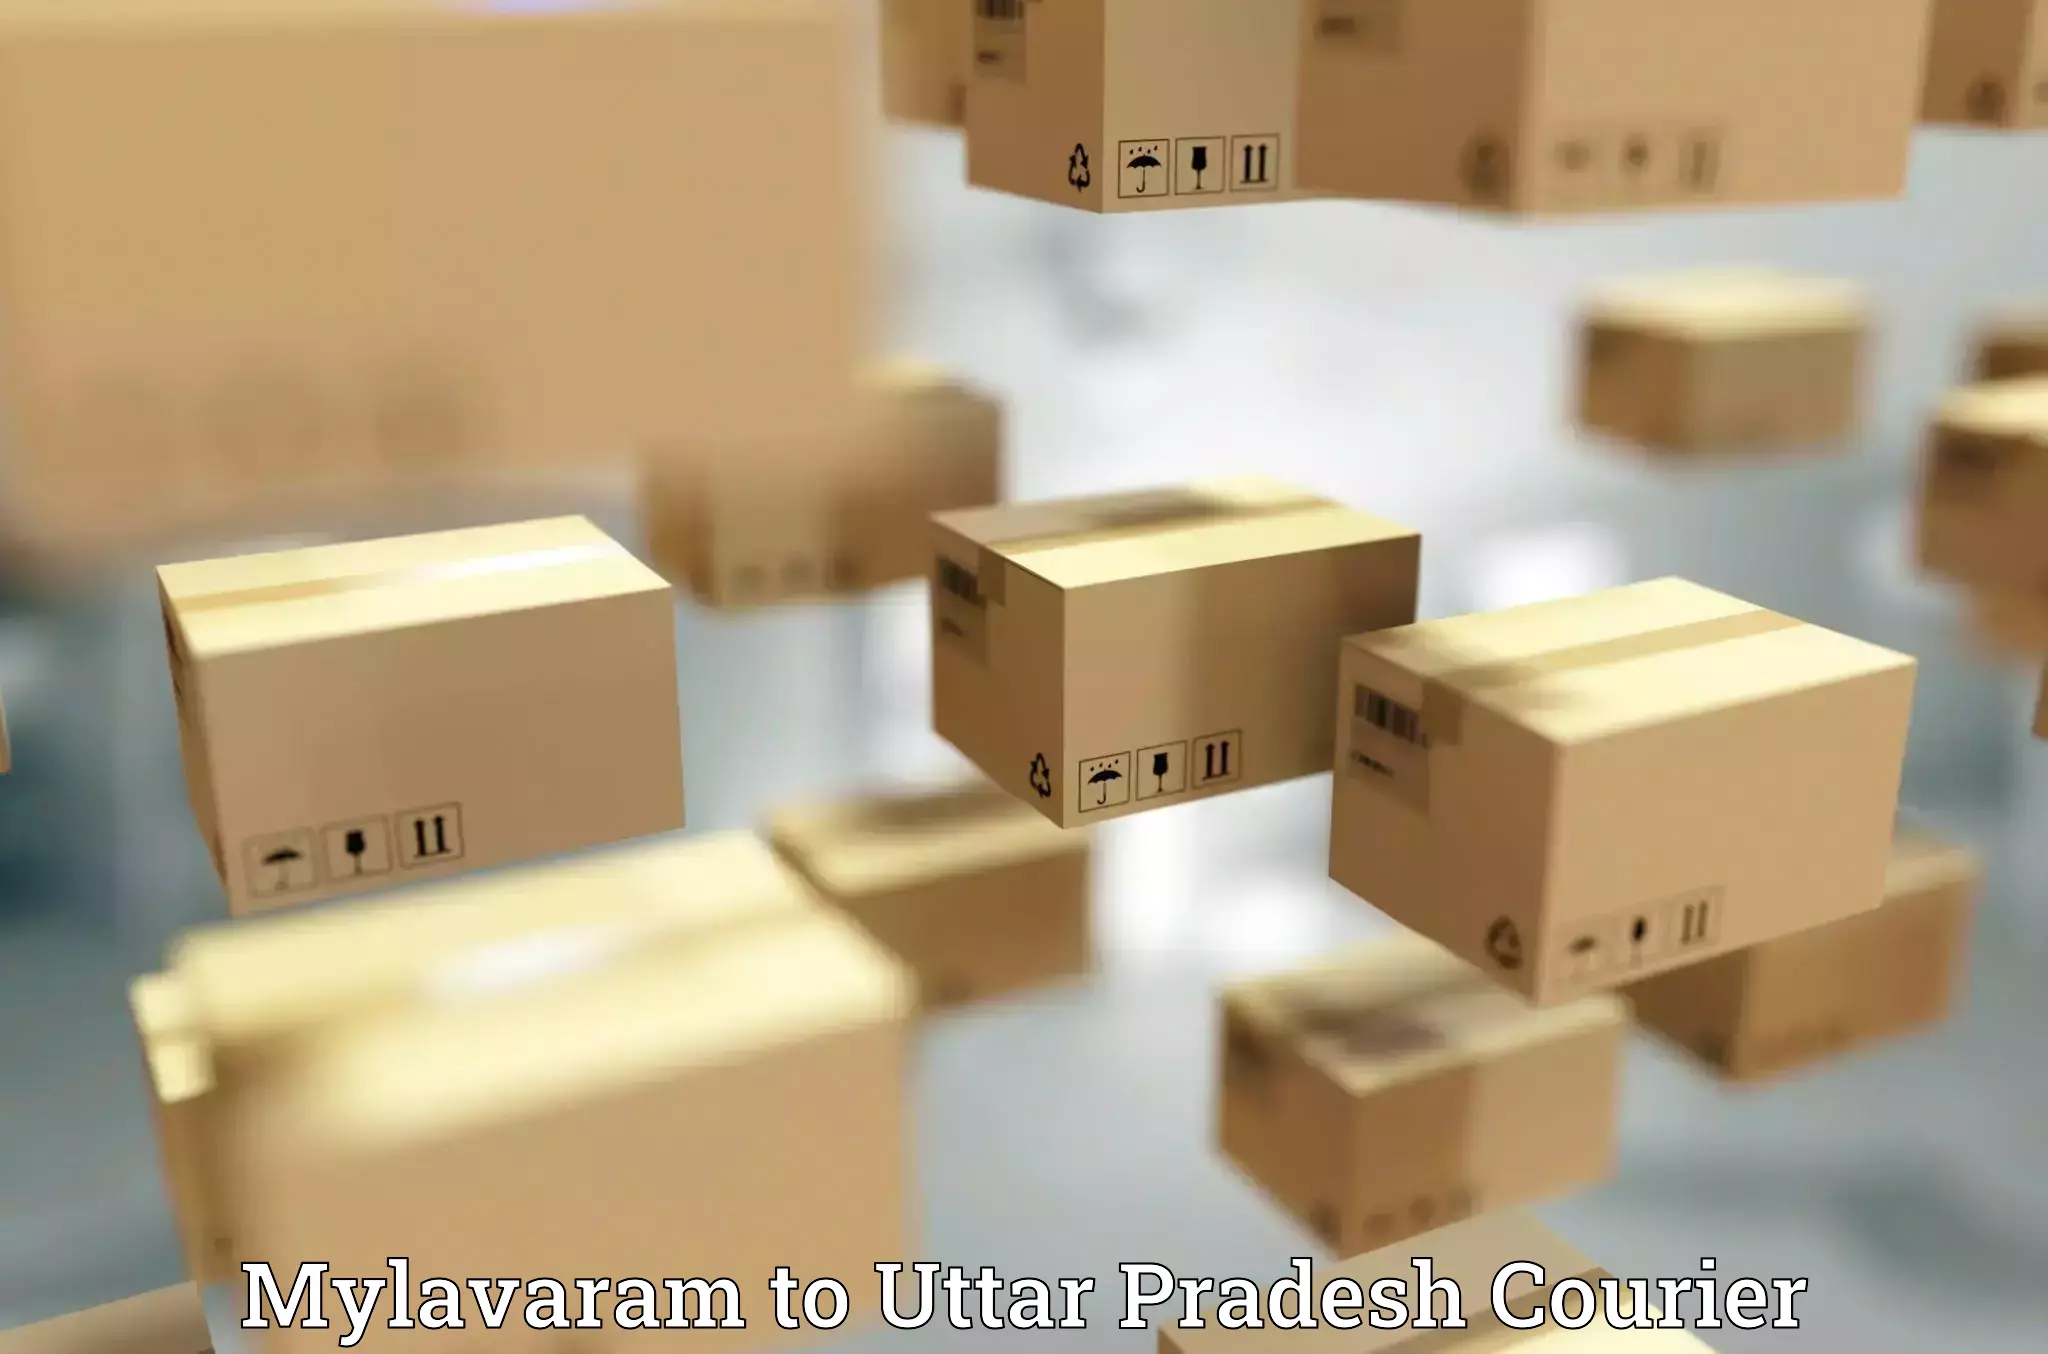 Full-service courier options Mylavaram to Bhinga